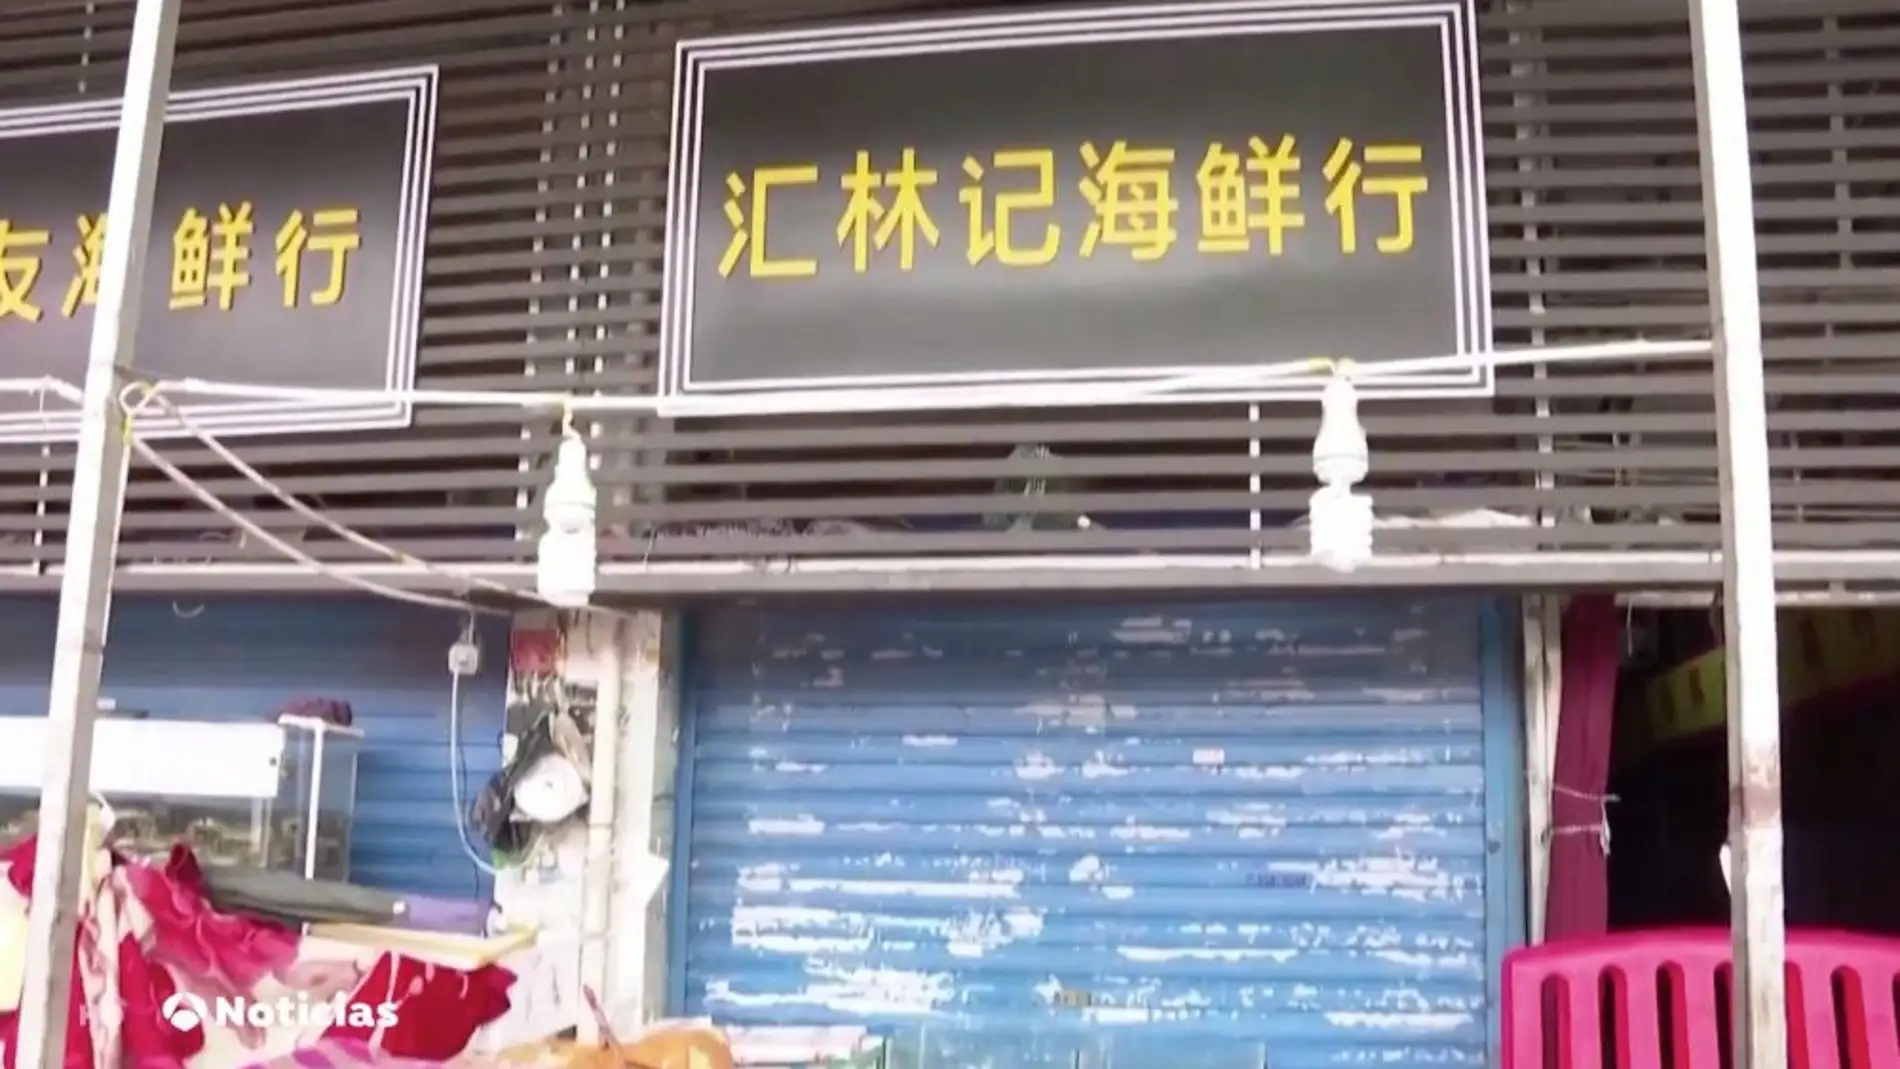 Un estudio apunta que el primer caso conocido de COVID-19 fue en el mercado de mariscos de Wuhan 